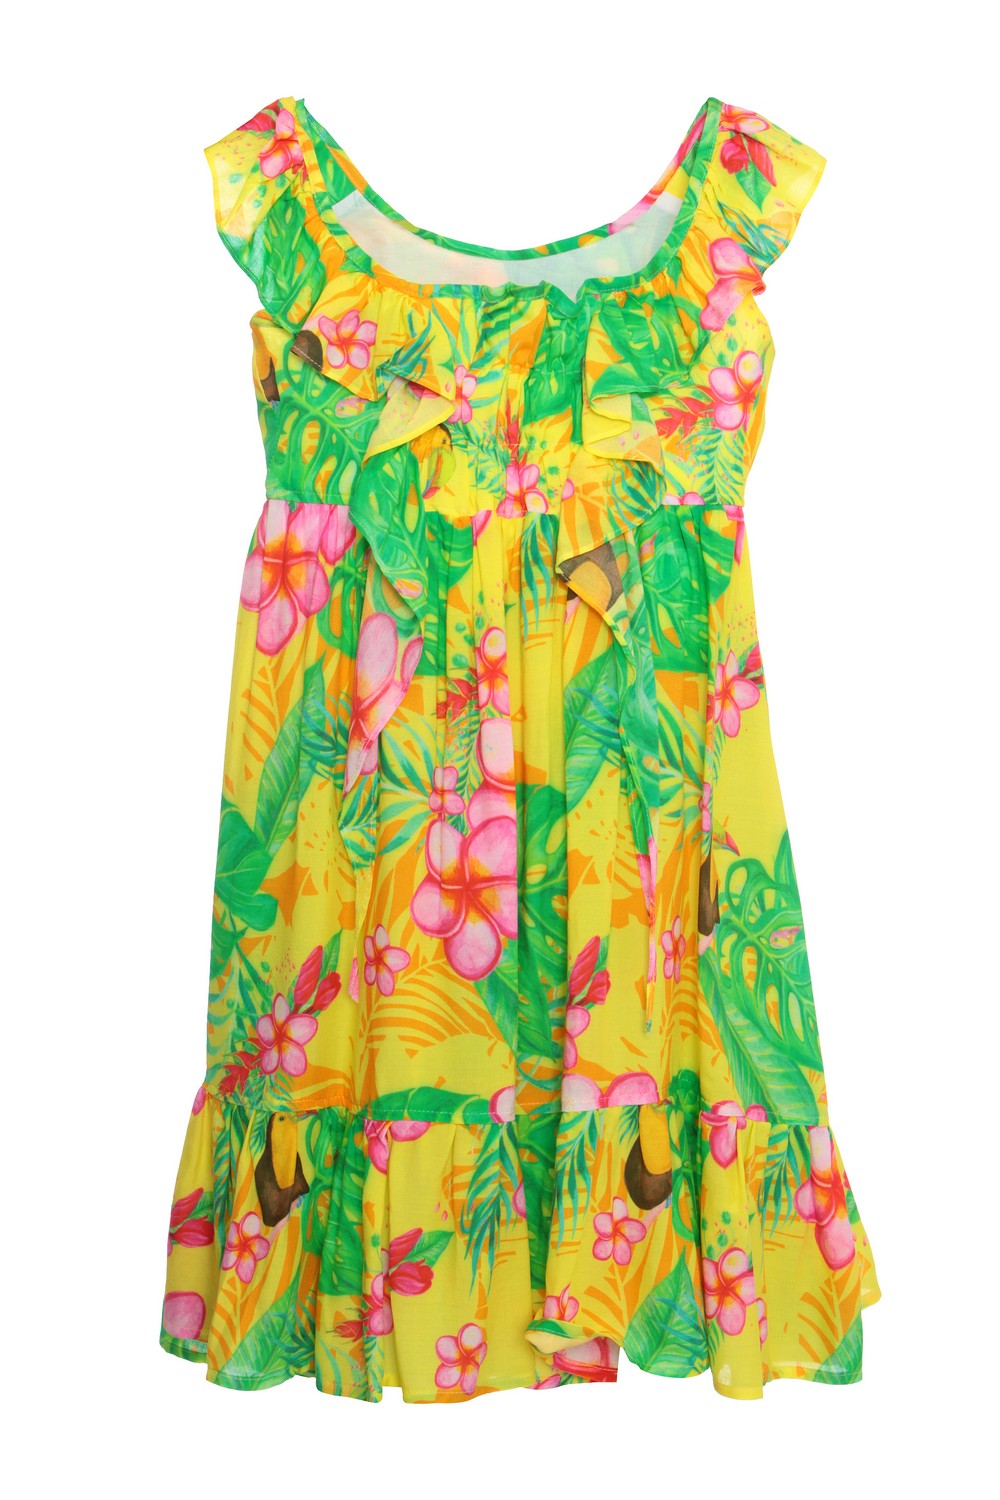 Aletta Beach Платье с тропическим принтом с воланами